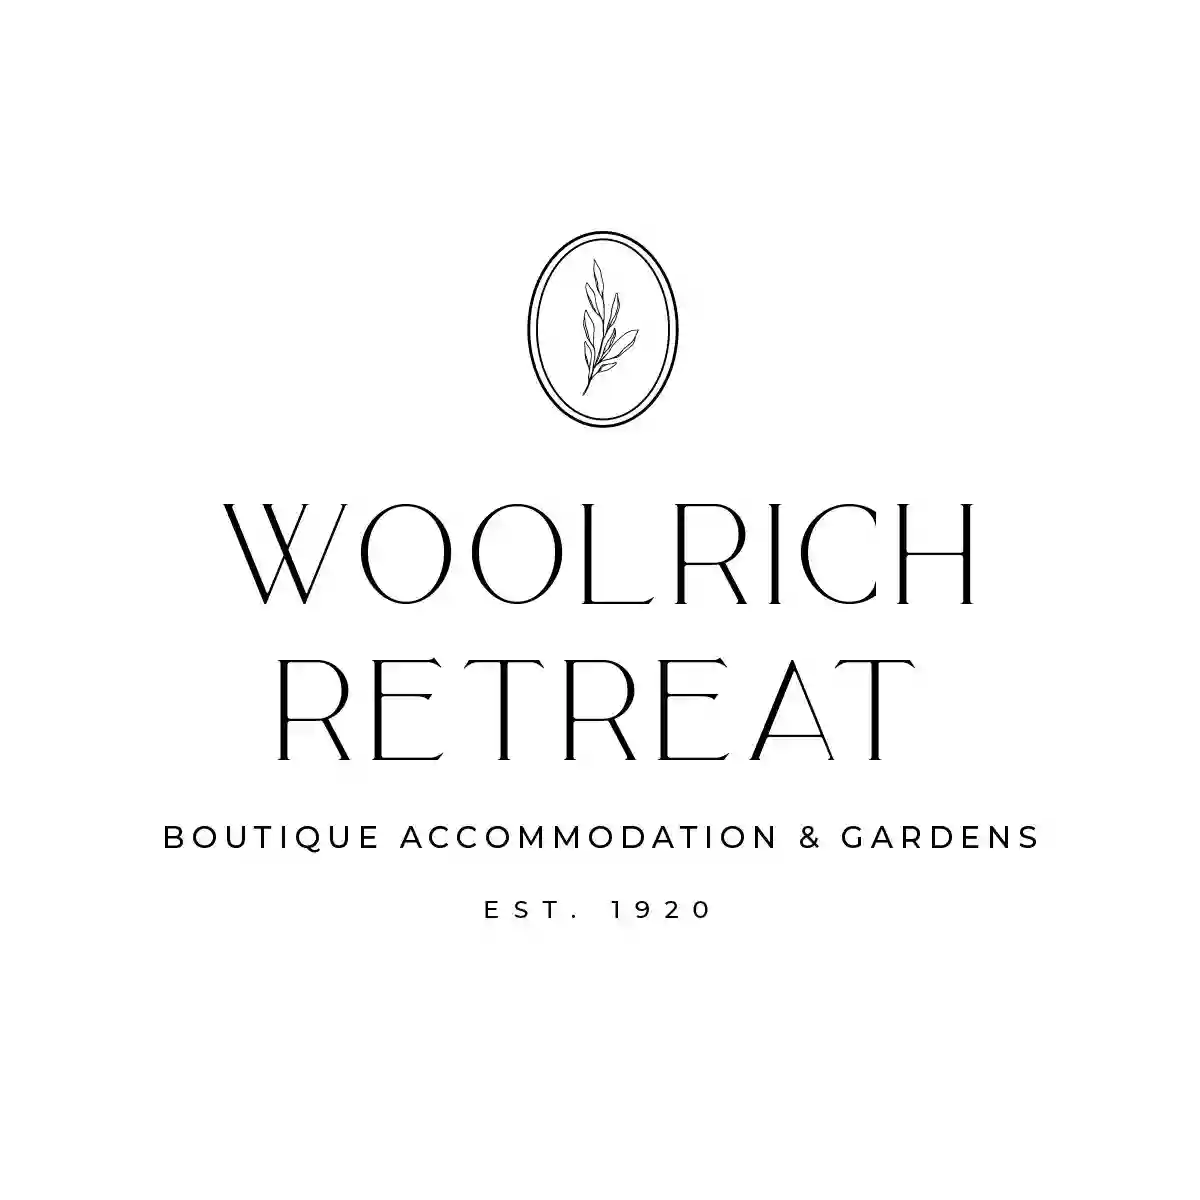 Woolrich Retreat